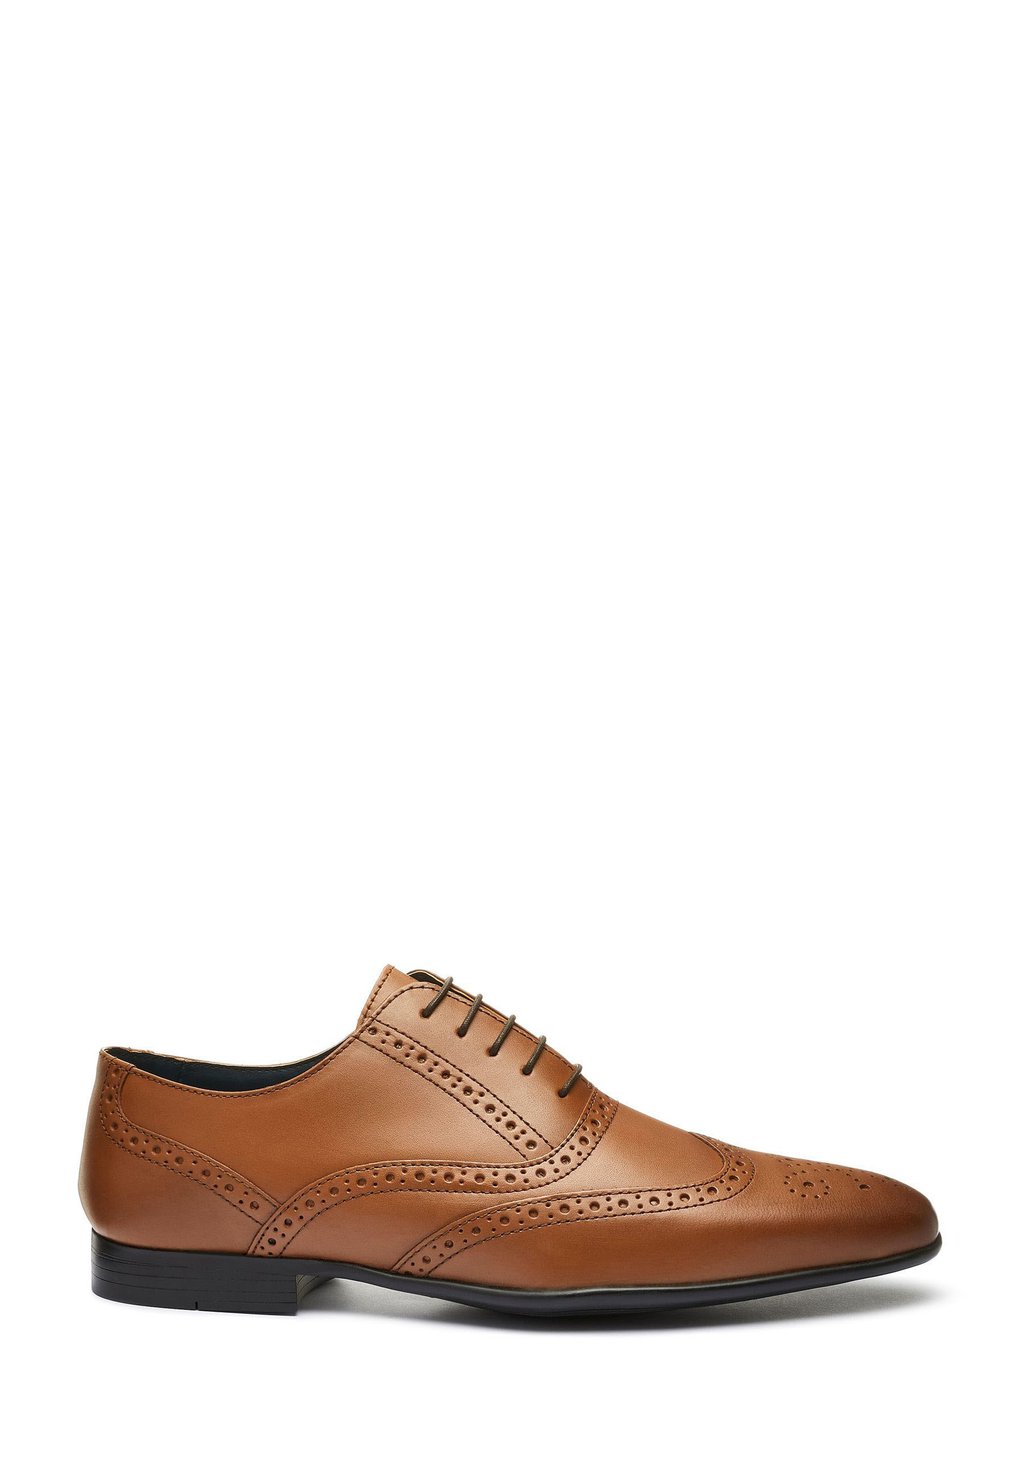 цена Элегантные туфли на шнуровке Oxford Brogue Wide Fit Next, цвет tan brown